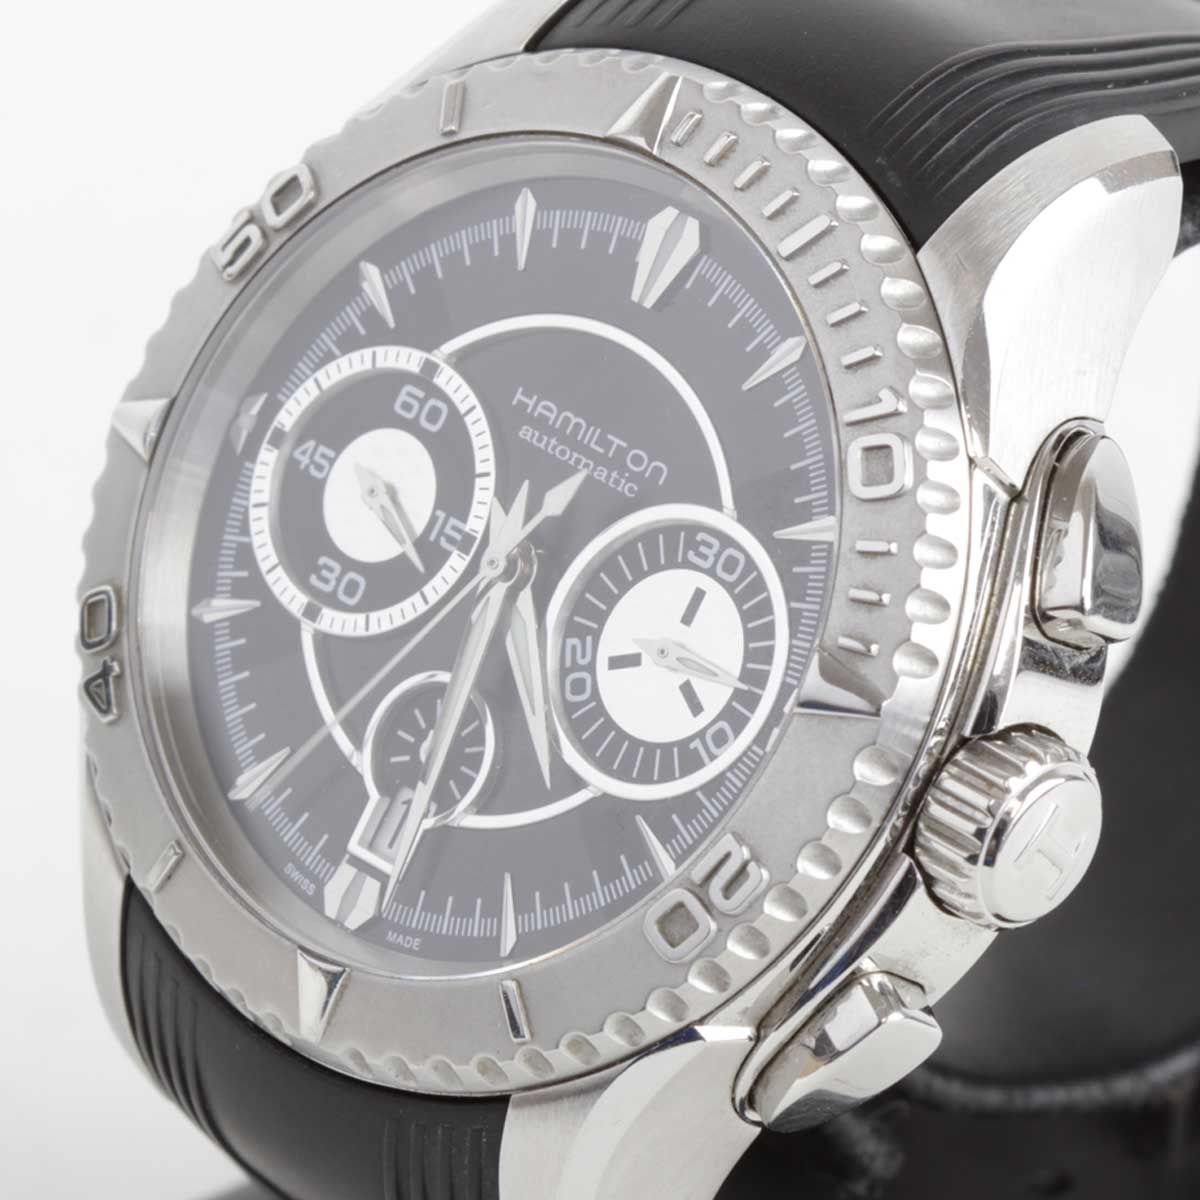 『USED』 HAMILTON  ジャズマスターシービュー H37616331 腕時計 自動巻き メンズ